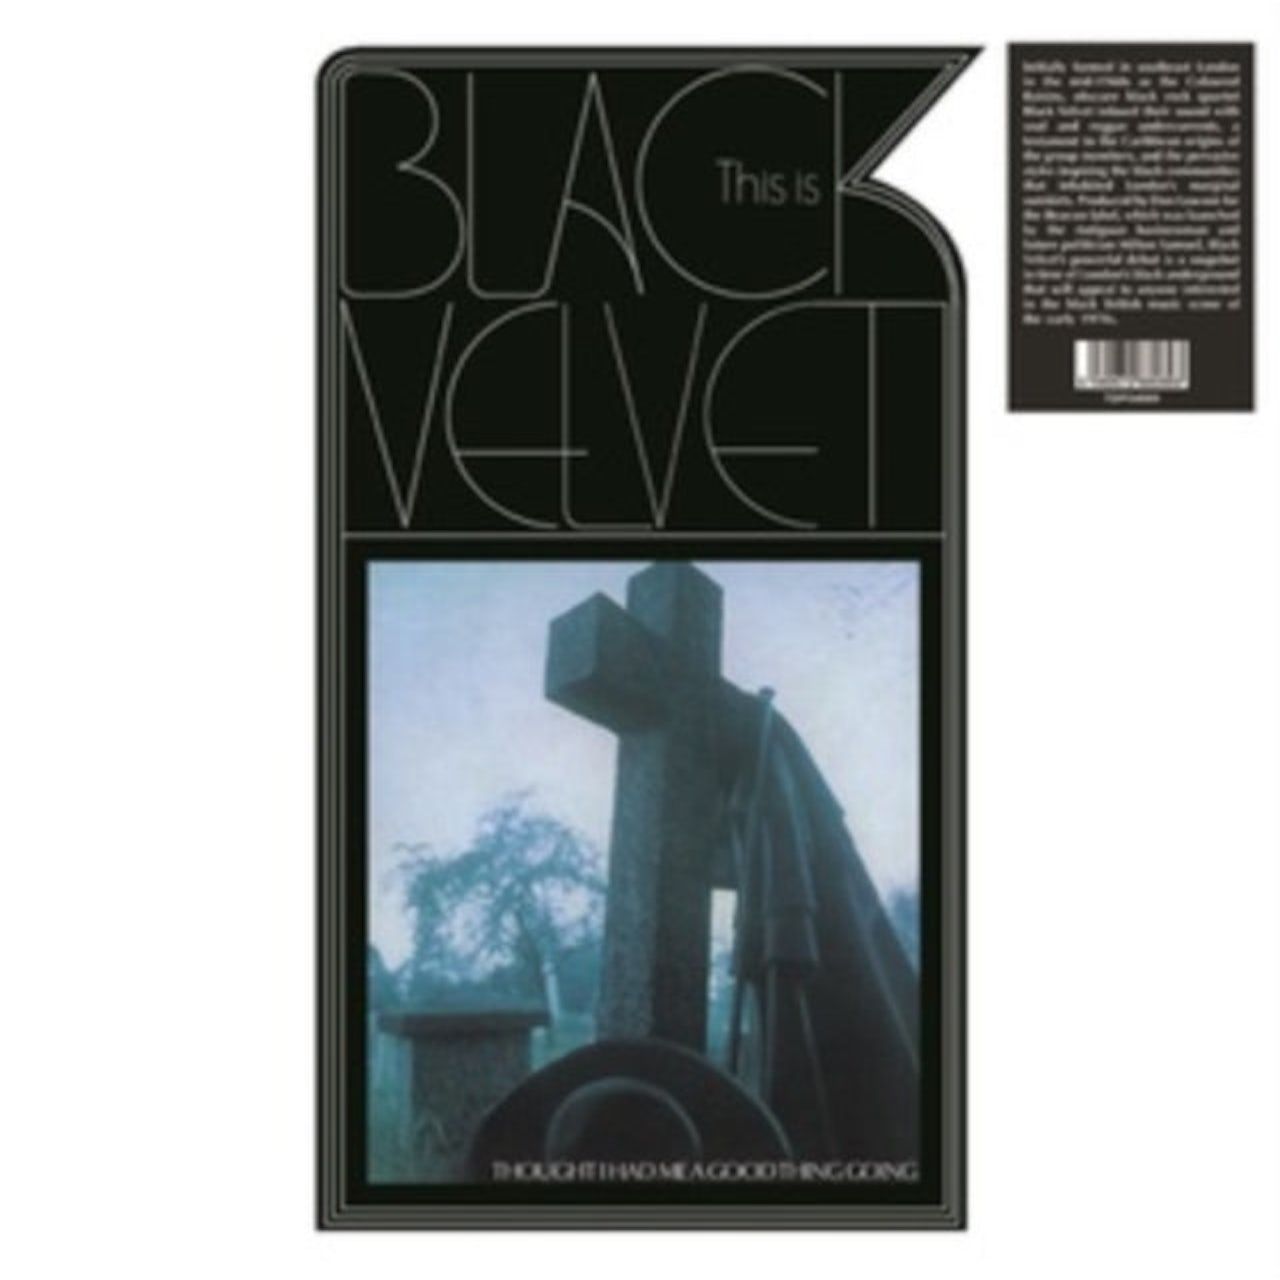 цена 5060672880893, Виниловая пластинка Black Velvet, This Is Black Velvet